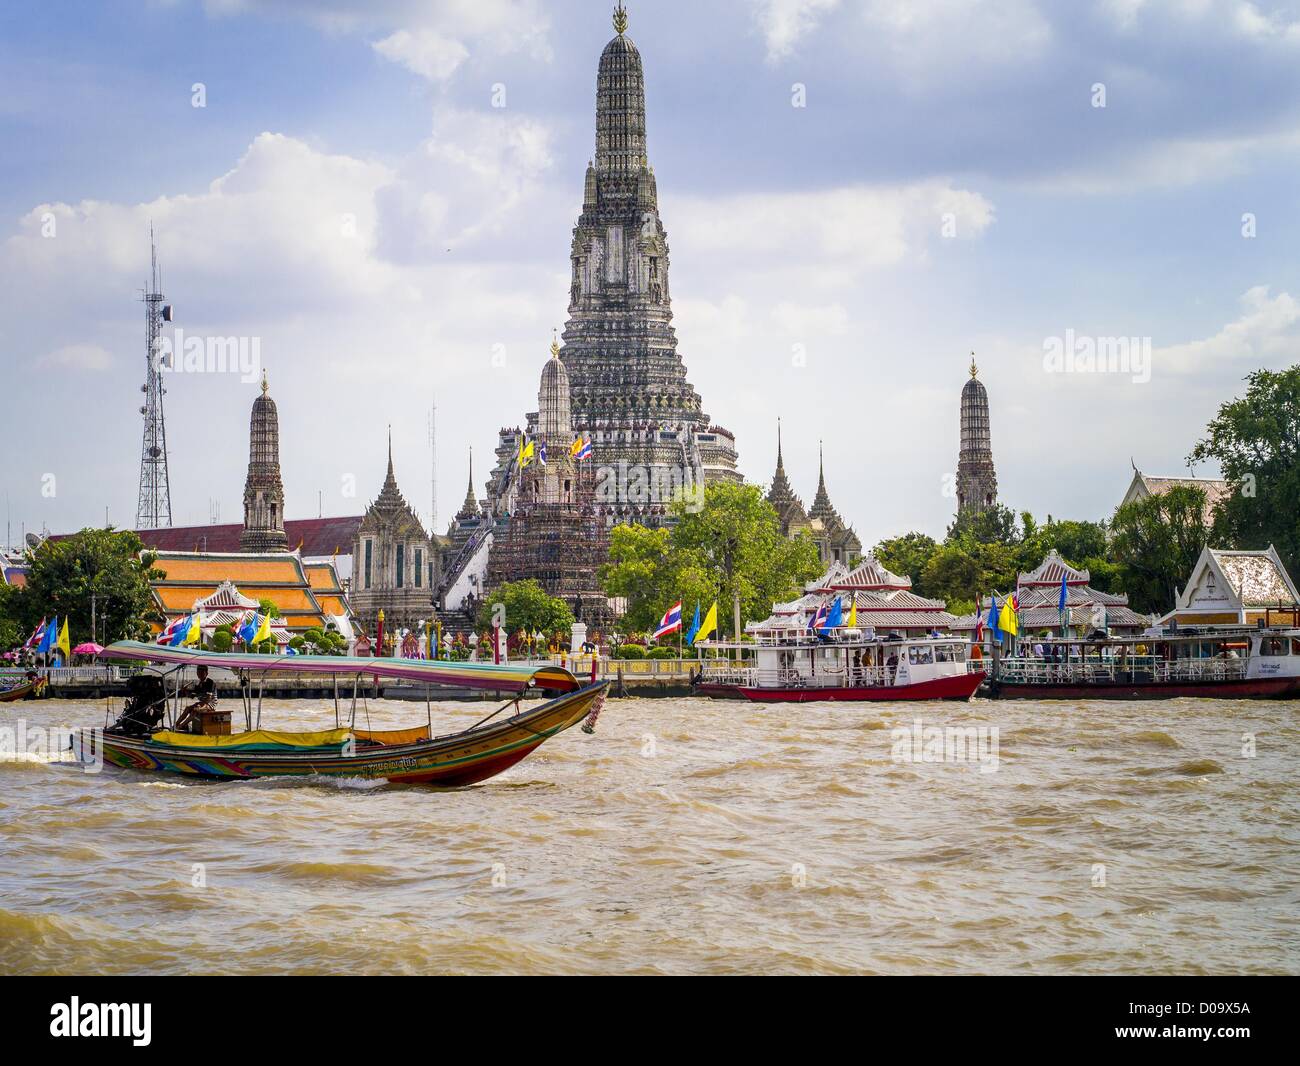 5. Oktober 2012 - Bangkok, Thailand - ein Longtailboot geht Wat Arun, der "Tempel der Morgenröte '' auf dem Chao Phraya River. Wat Arun ist eines der berühmtesten Tempel in Thailand. Der Khmer-Stil '' prang'' dominiert die Skyline dieses Teils von Bangkok. Long-Tail-Boote sind schmale Boote verwendet als Taxis auf den Wasserwegen von Thailand. Bangkok einmal Kreuz und quer durchzogen von Kanälen und Boote waren die Art, wie Menschen sich herumgesprochen. Jetzt wurden die meisten der Kanäle ausgefüllt und gepflastert. Der Chao Phraya-Fluss, der Bangkok teilt, hat immer noch regelmäßigen Passagierservice Boot. (Bild Kredit: Jack Kurtz/ZUMAPRESS.com ©) Stockfoto